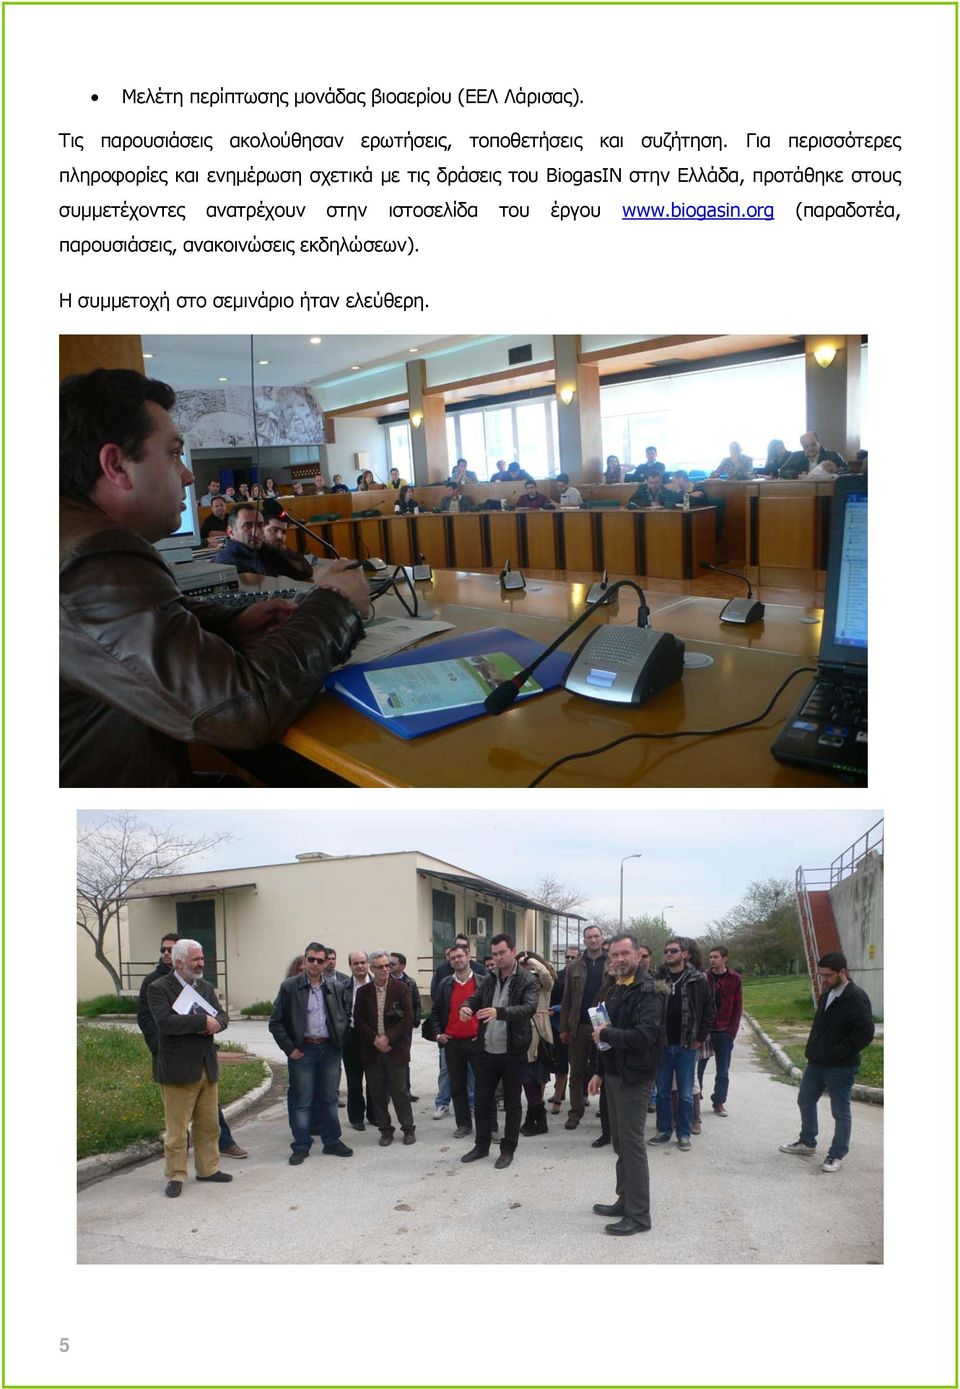 Για περισσότερες πληροφορίες και ενημέρωση σχετικά με τις δράσεις του BiogasIN στην Ελλάδα,